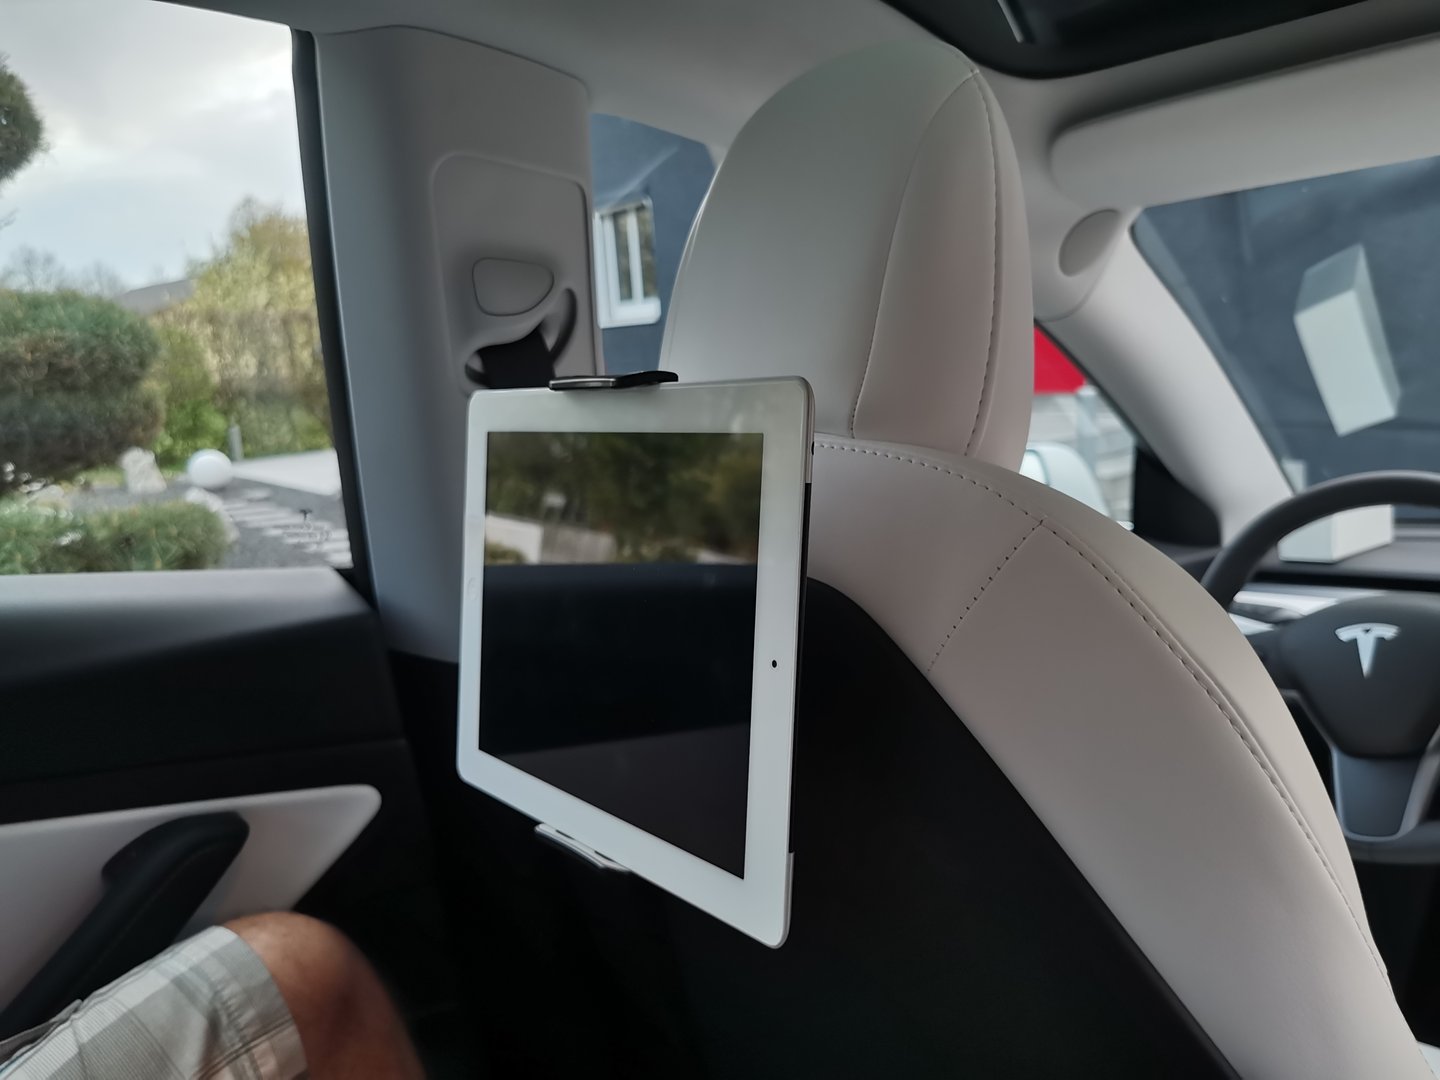 Model 3&Y: iPad- und Handy-Halterung auf dem Rücksitz - Torque